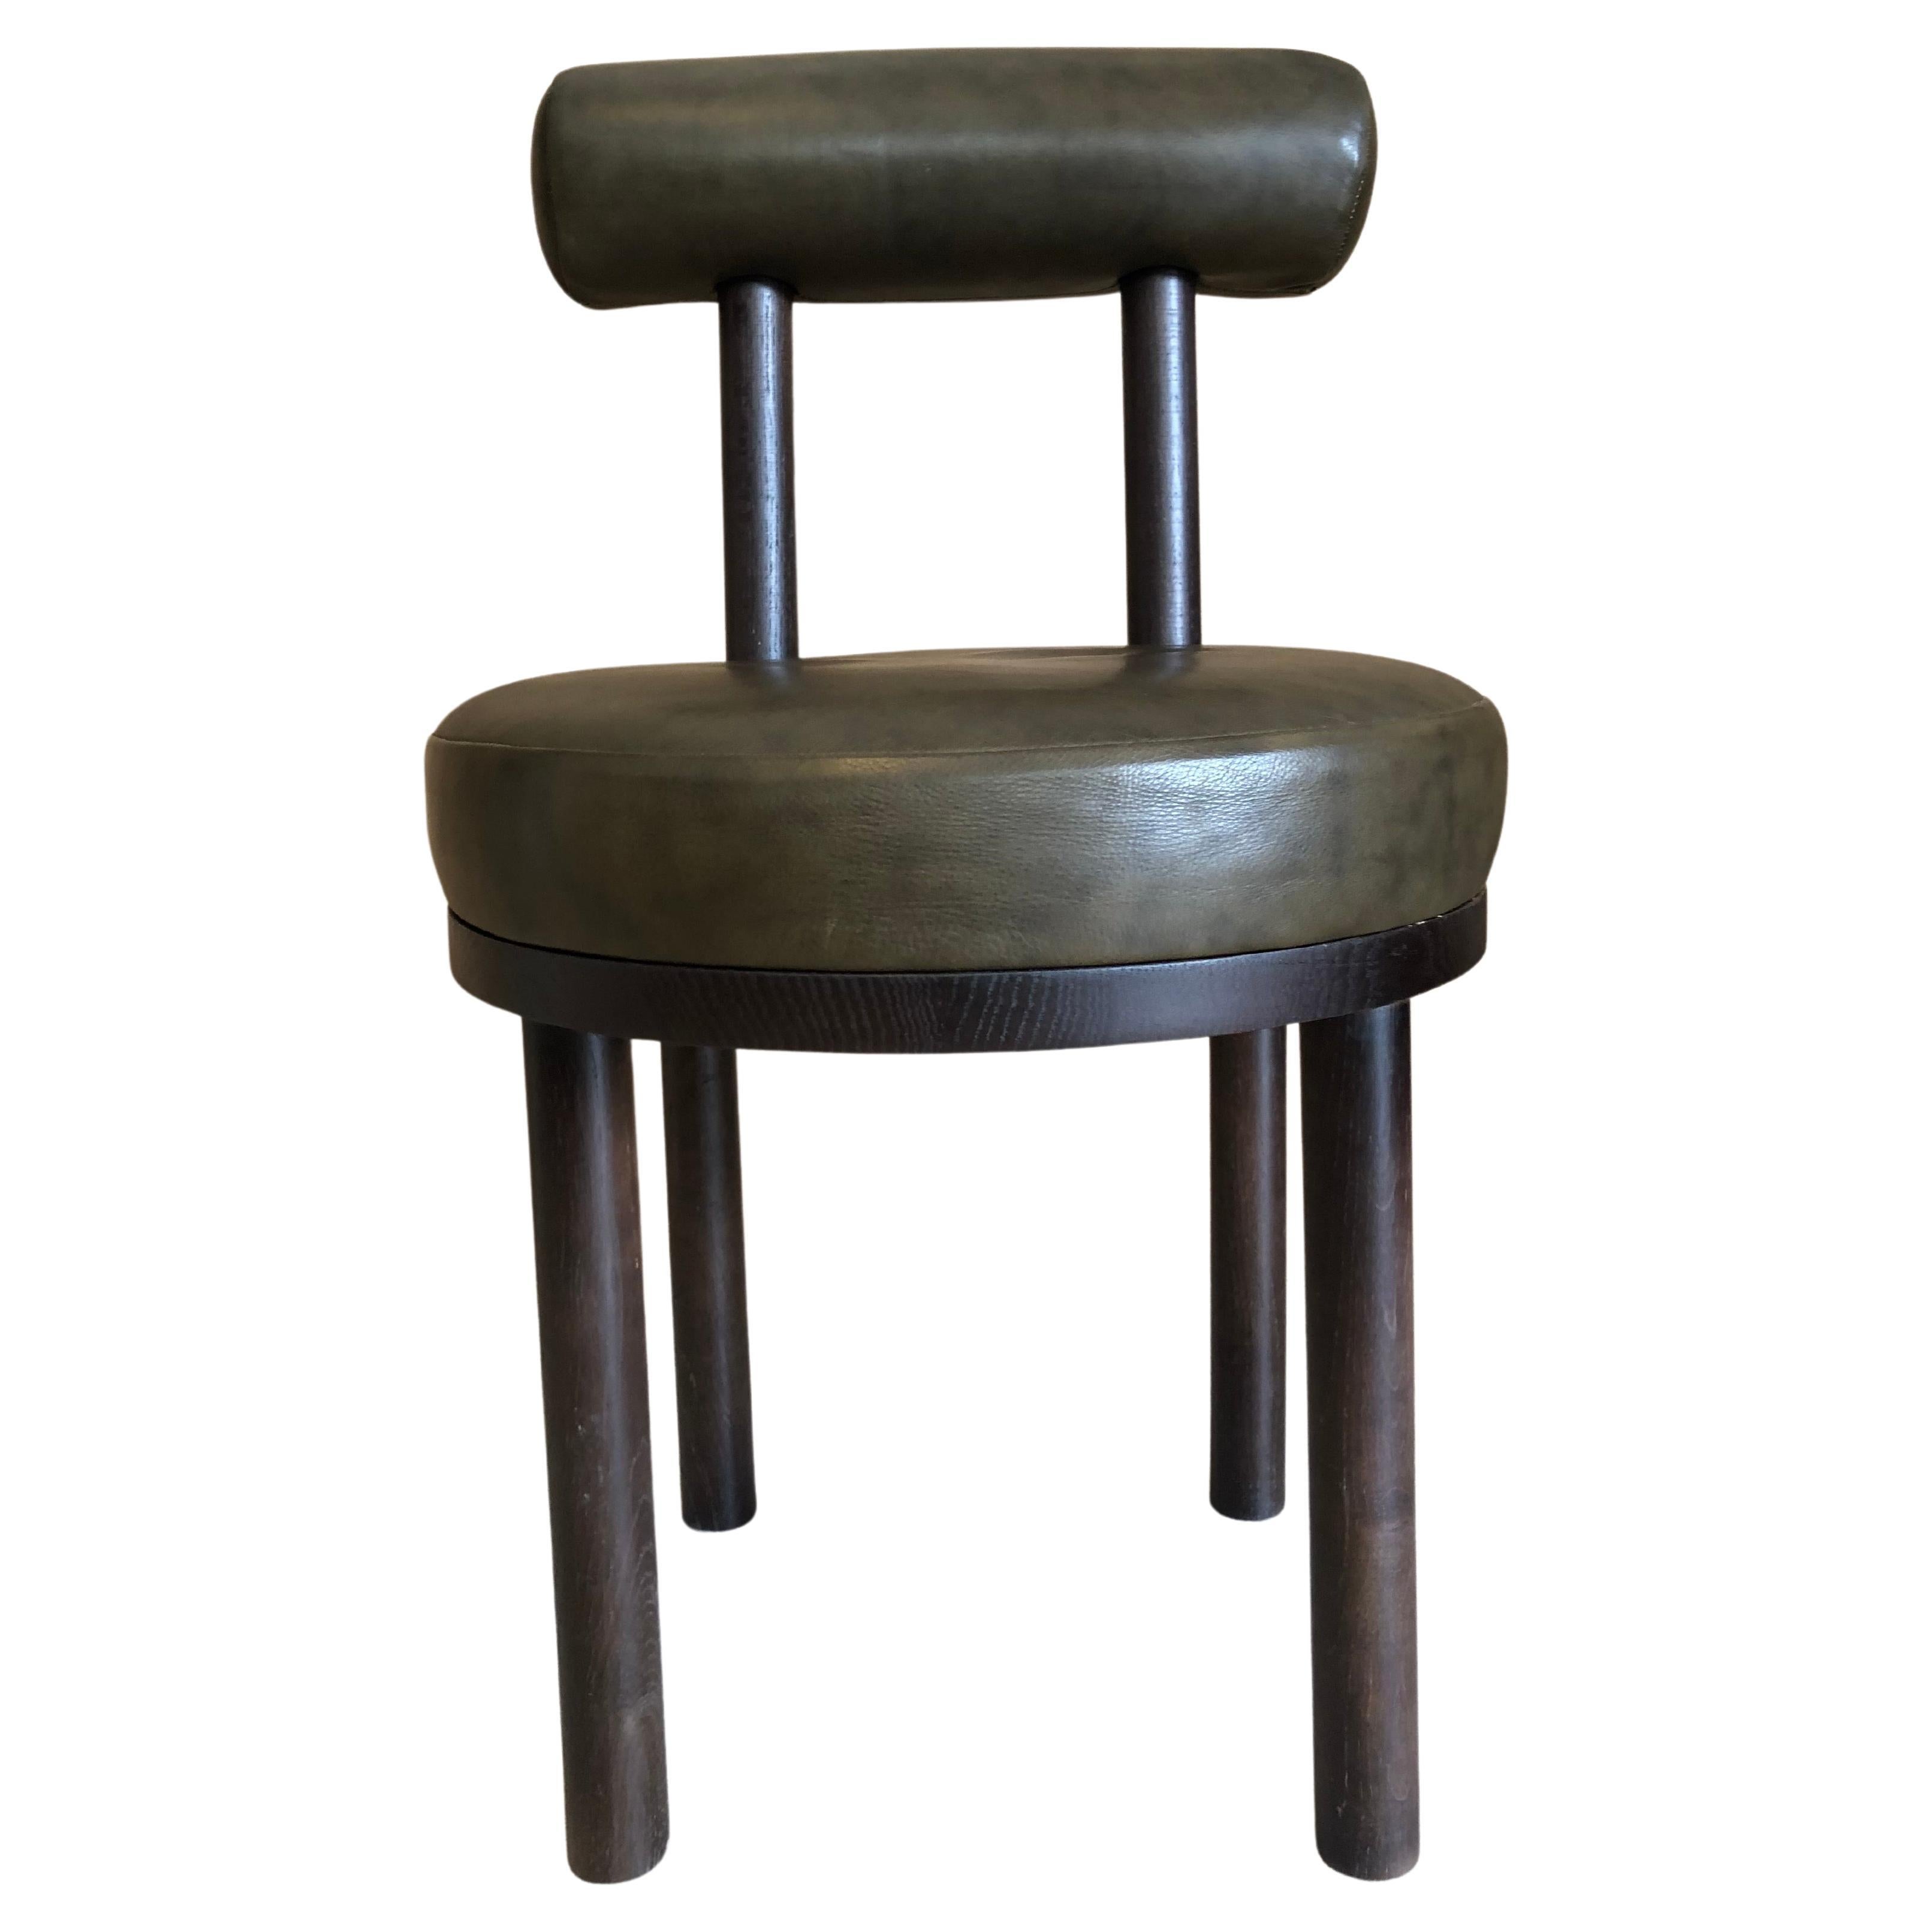 Moderner Moca-Stuhl aus Leder und dunkler Eiche, hergestellt in Portugal von Sammler